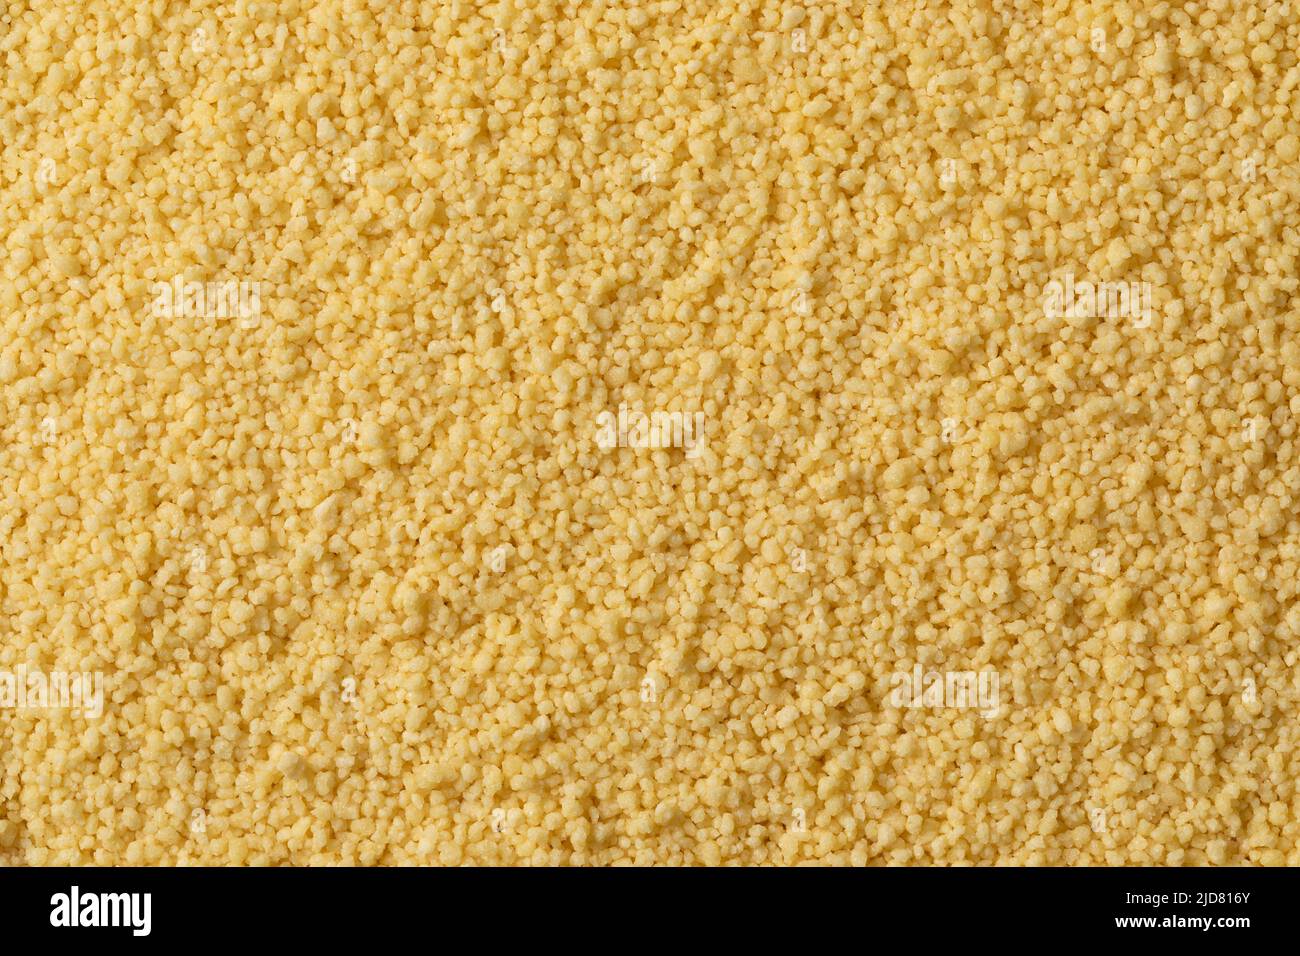 Il couscous secco non cotti si avvicina al telaio completo come sfondo Foto Stock